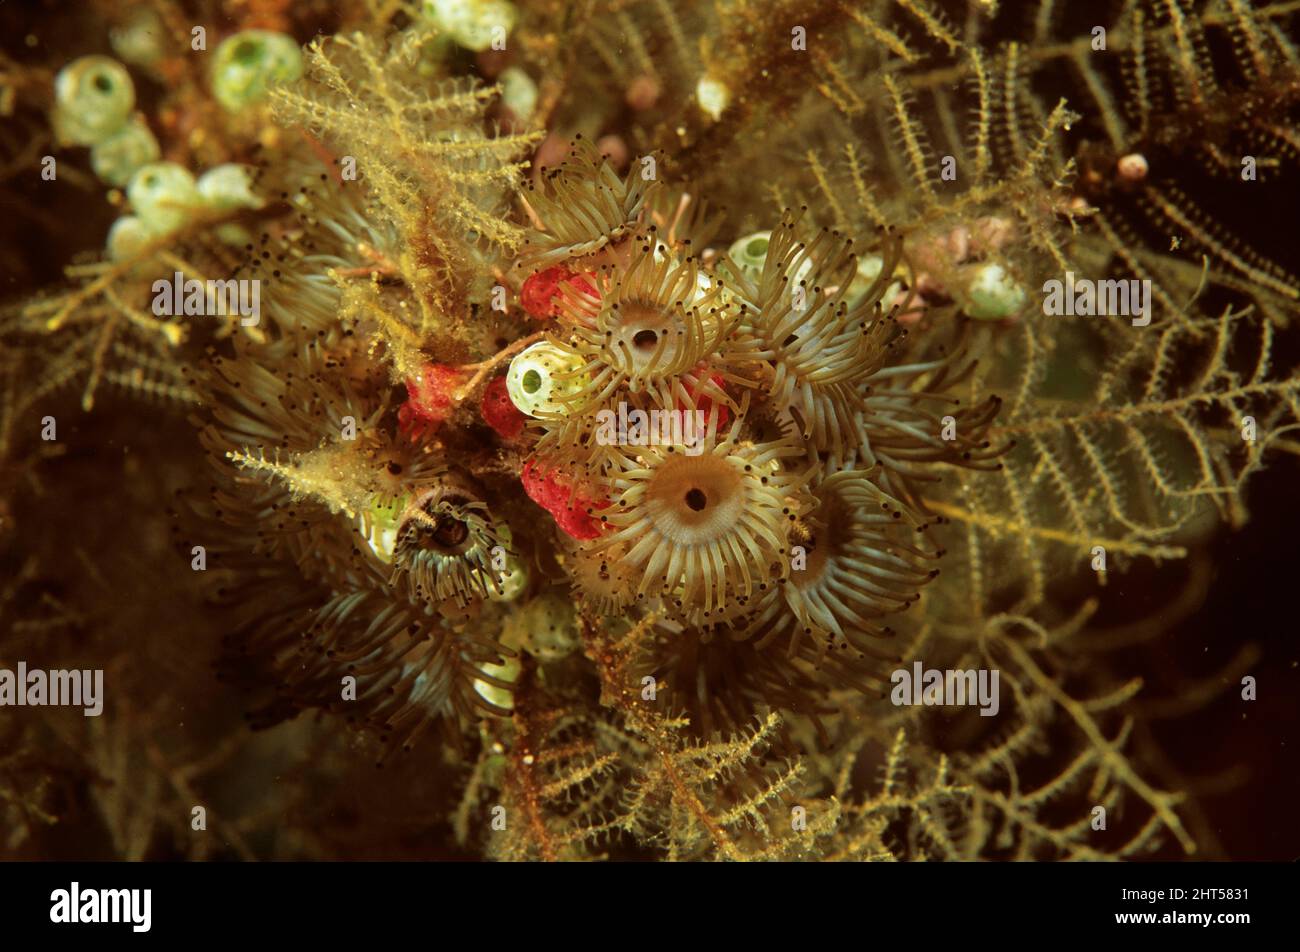 Competencia por el espacio: Zoántidos multi-tentacled, ascidianos coloniales e hidroides. Manado, Indonesia Foto de stock